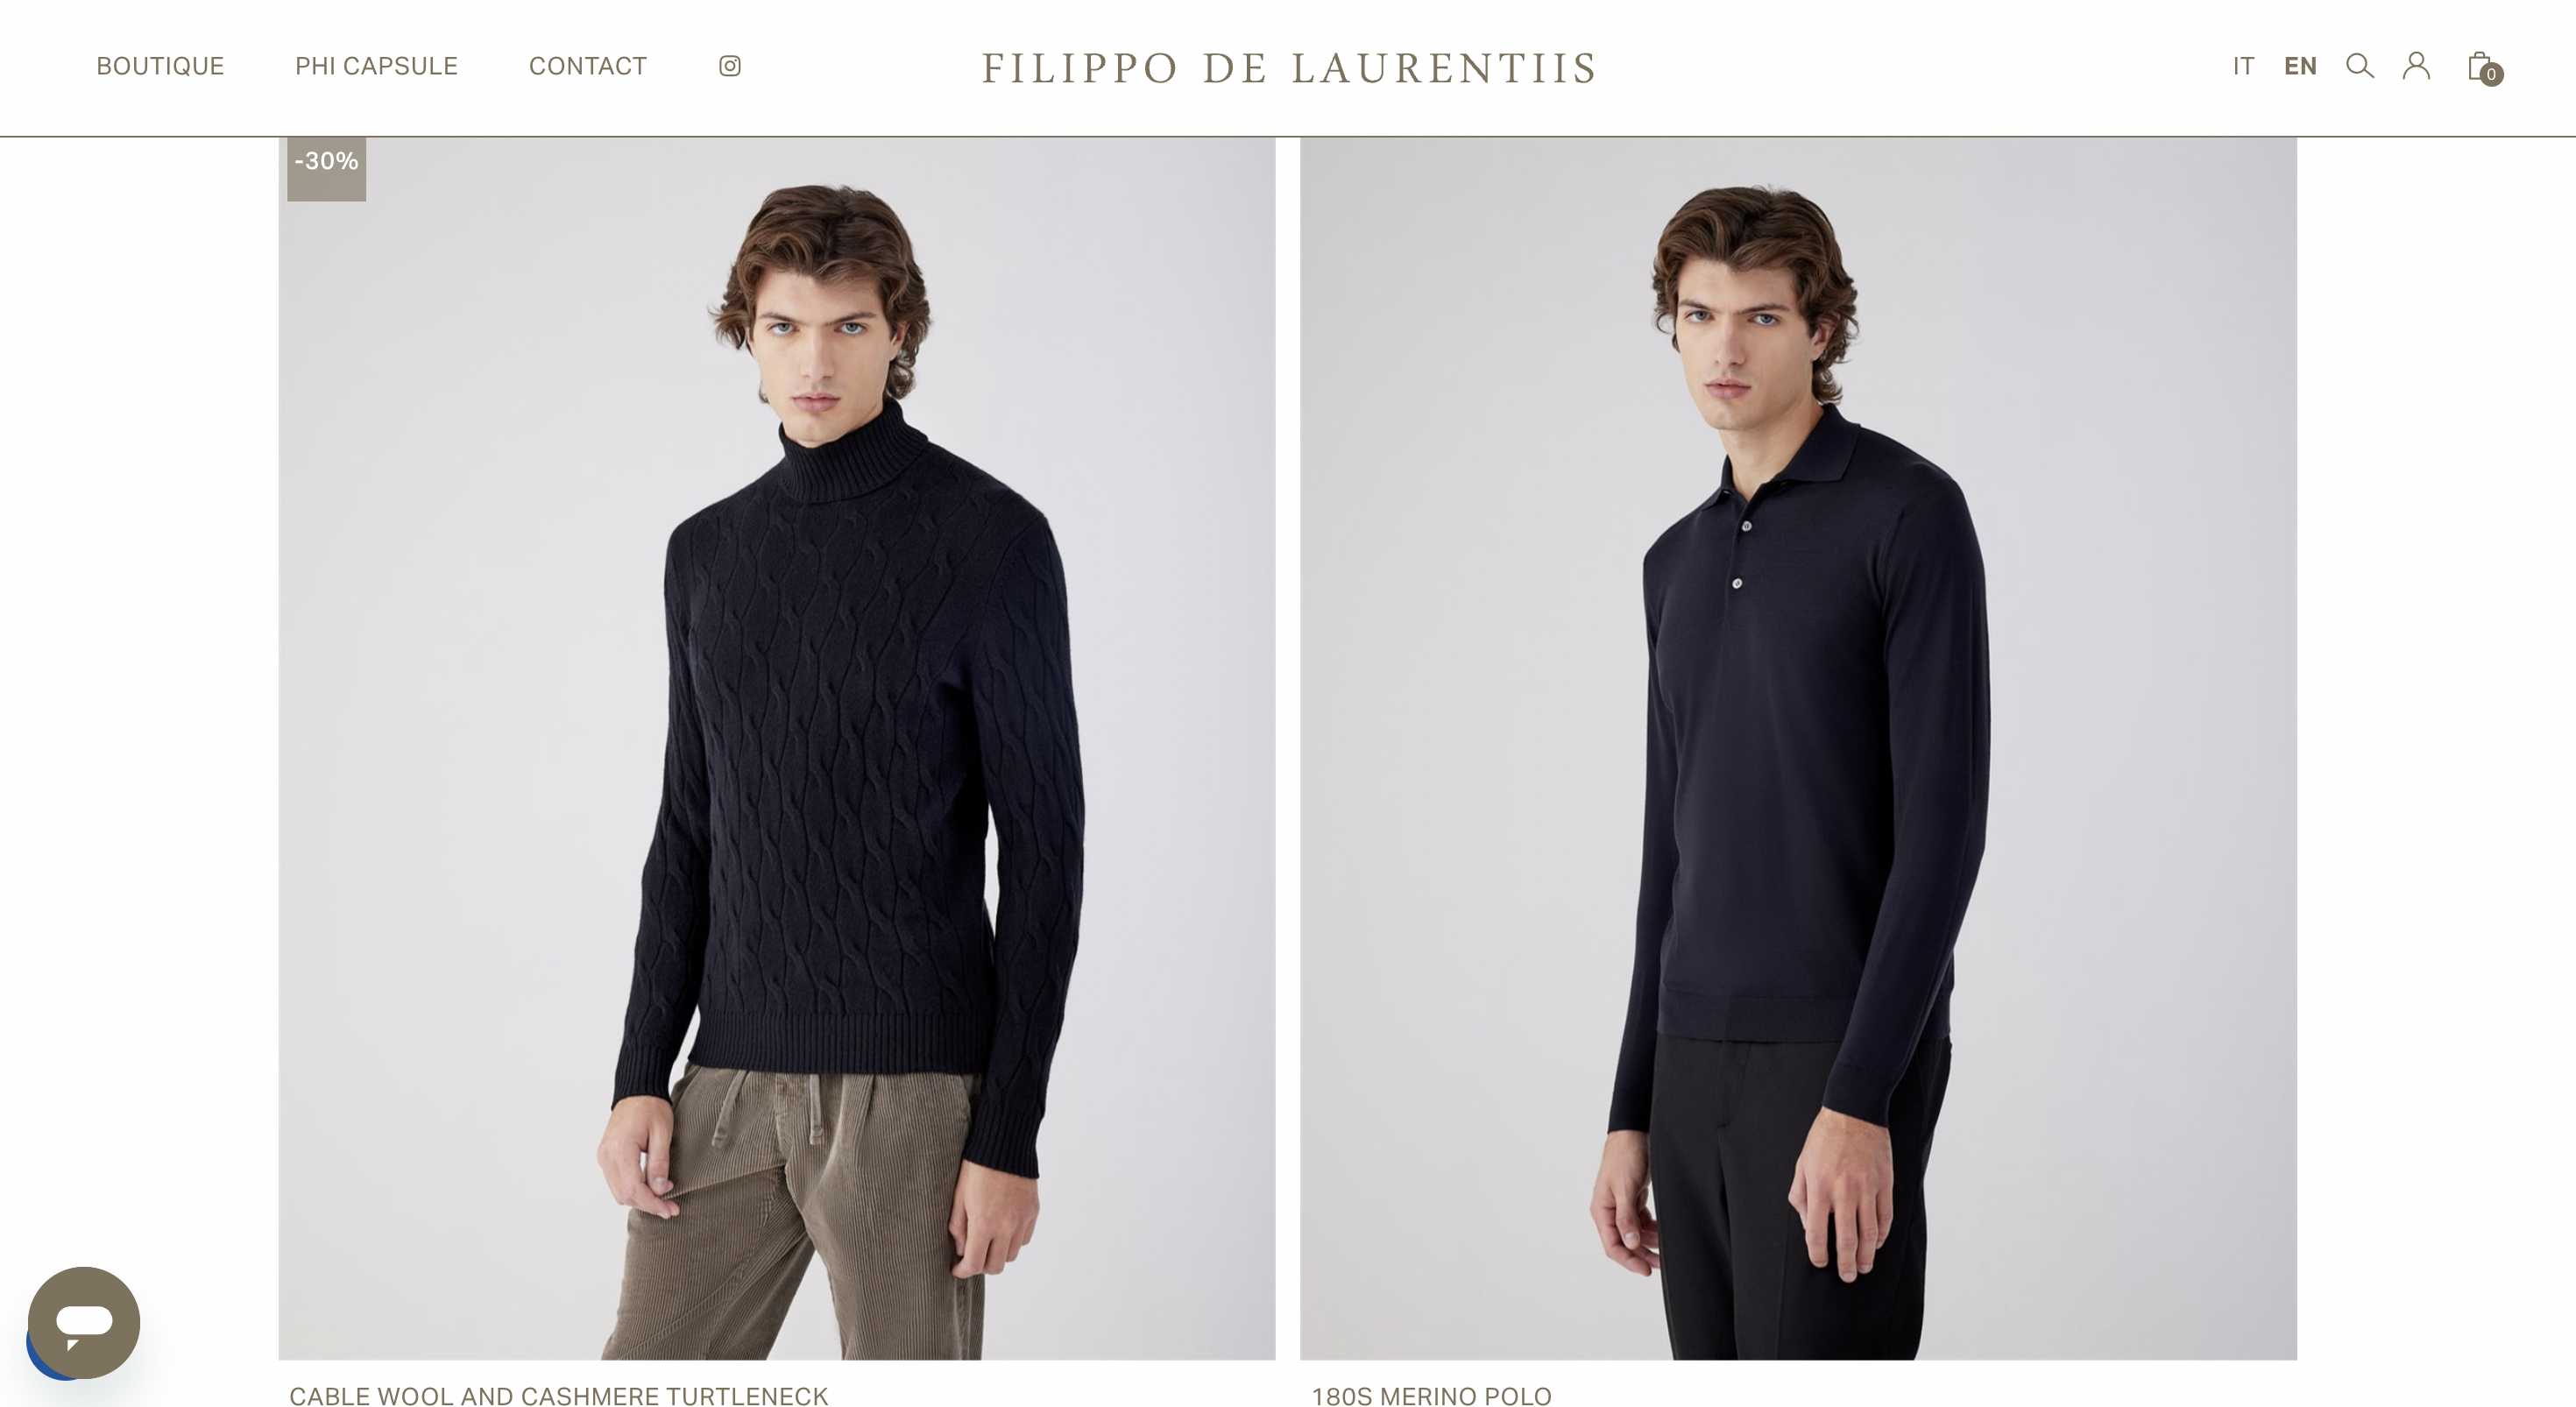 意大利投资集团 Quadrivio 收购意大利针织男装品牌 Filippo De Laurentiis 的母公司 51%的股份